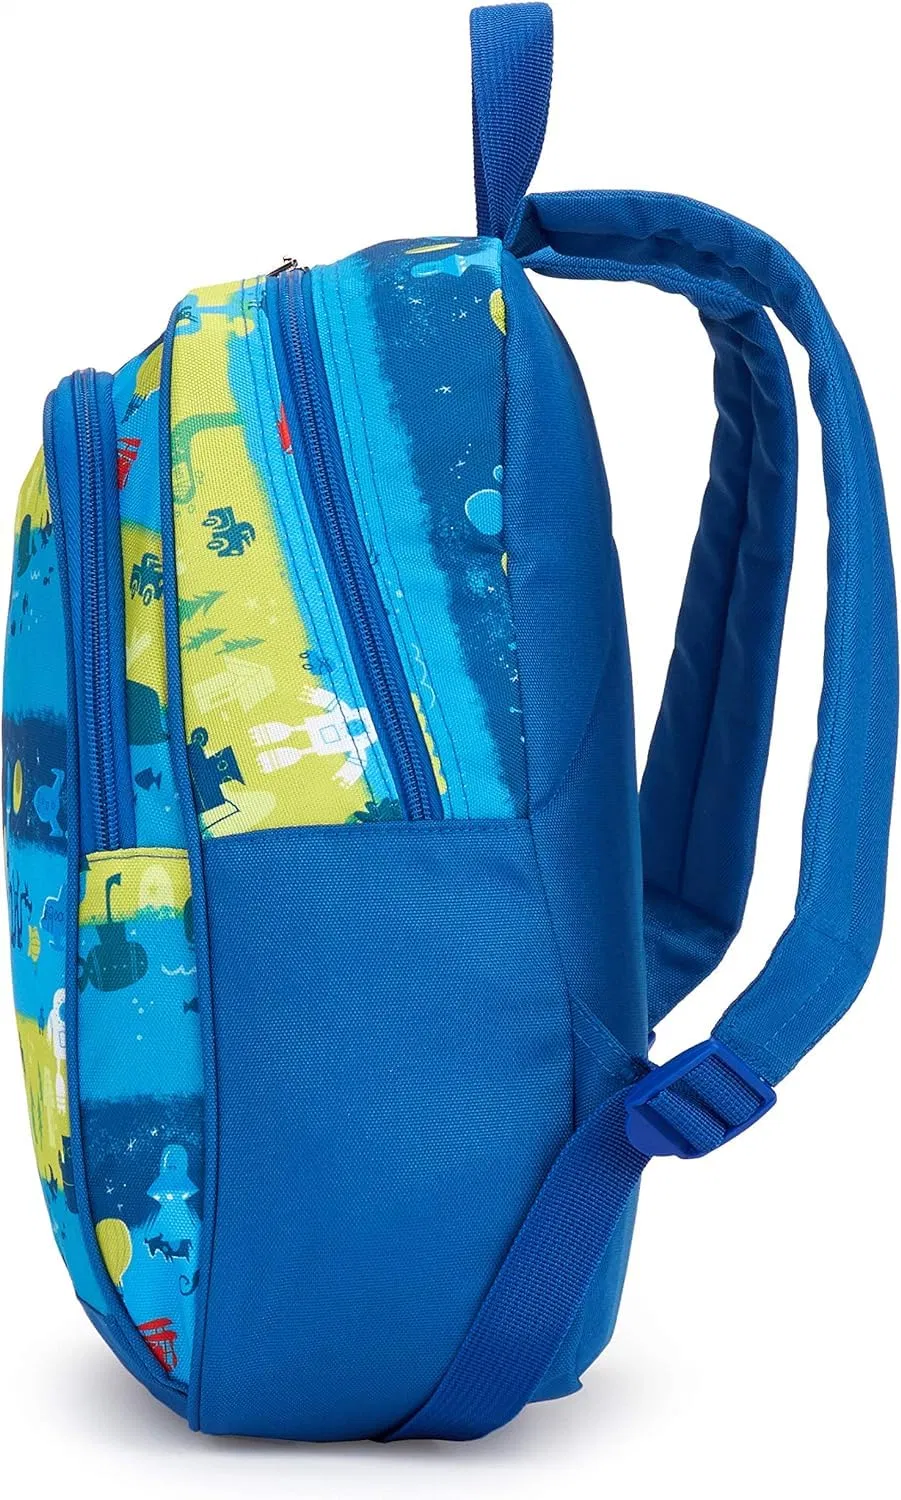 Protective Bumper Colorful Compatible Preschool Kindergarten Toddler School Kids Backpack